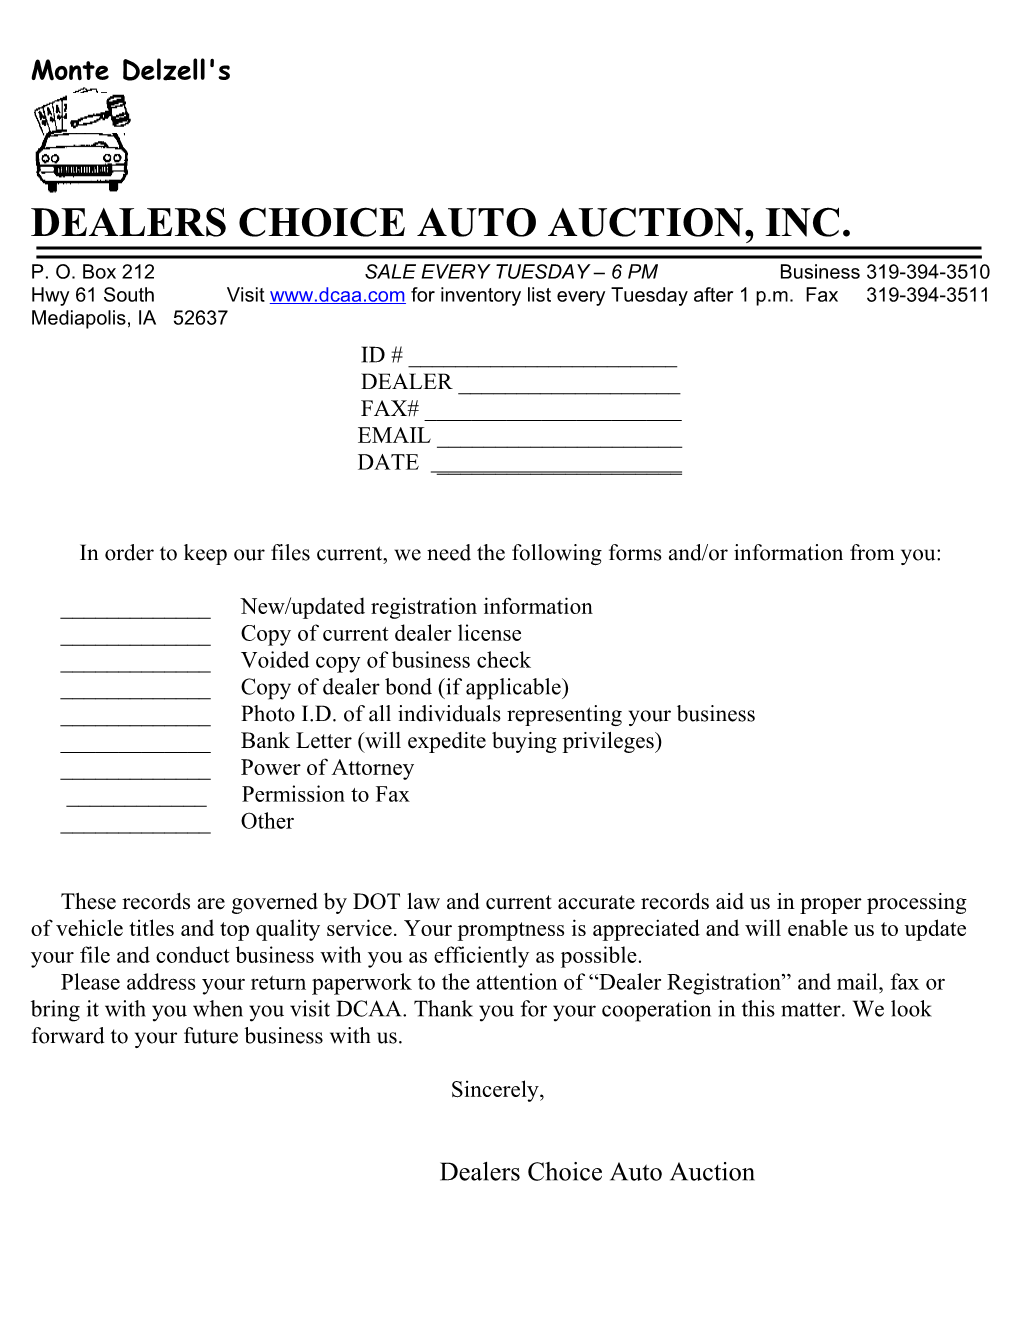 Dealers Choice Auto Auction, Inc